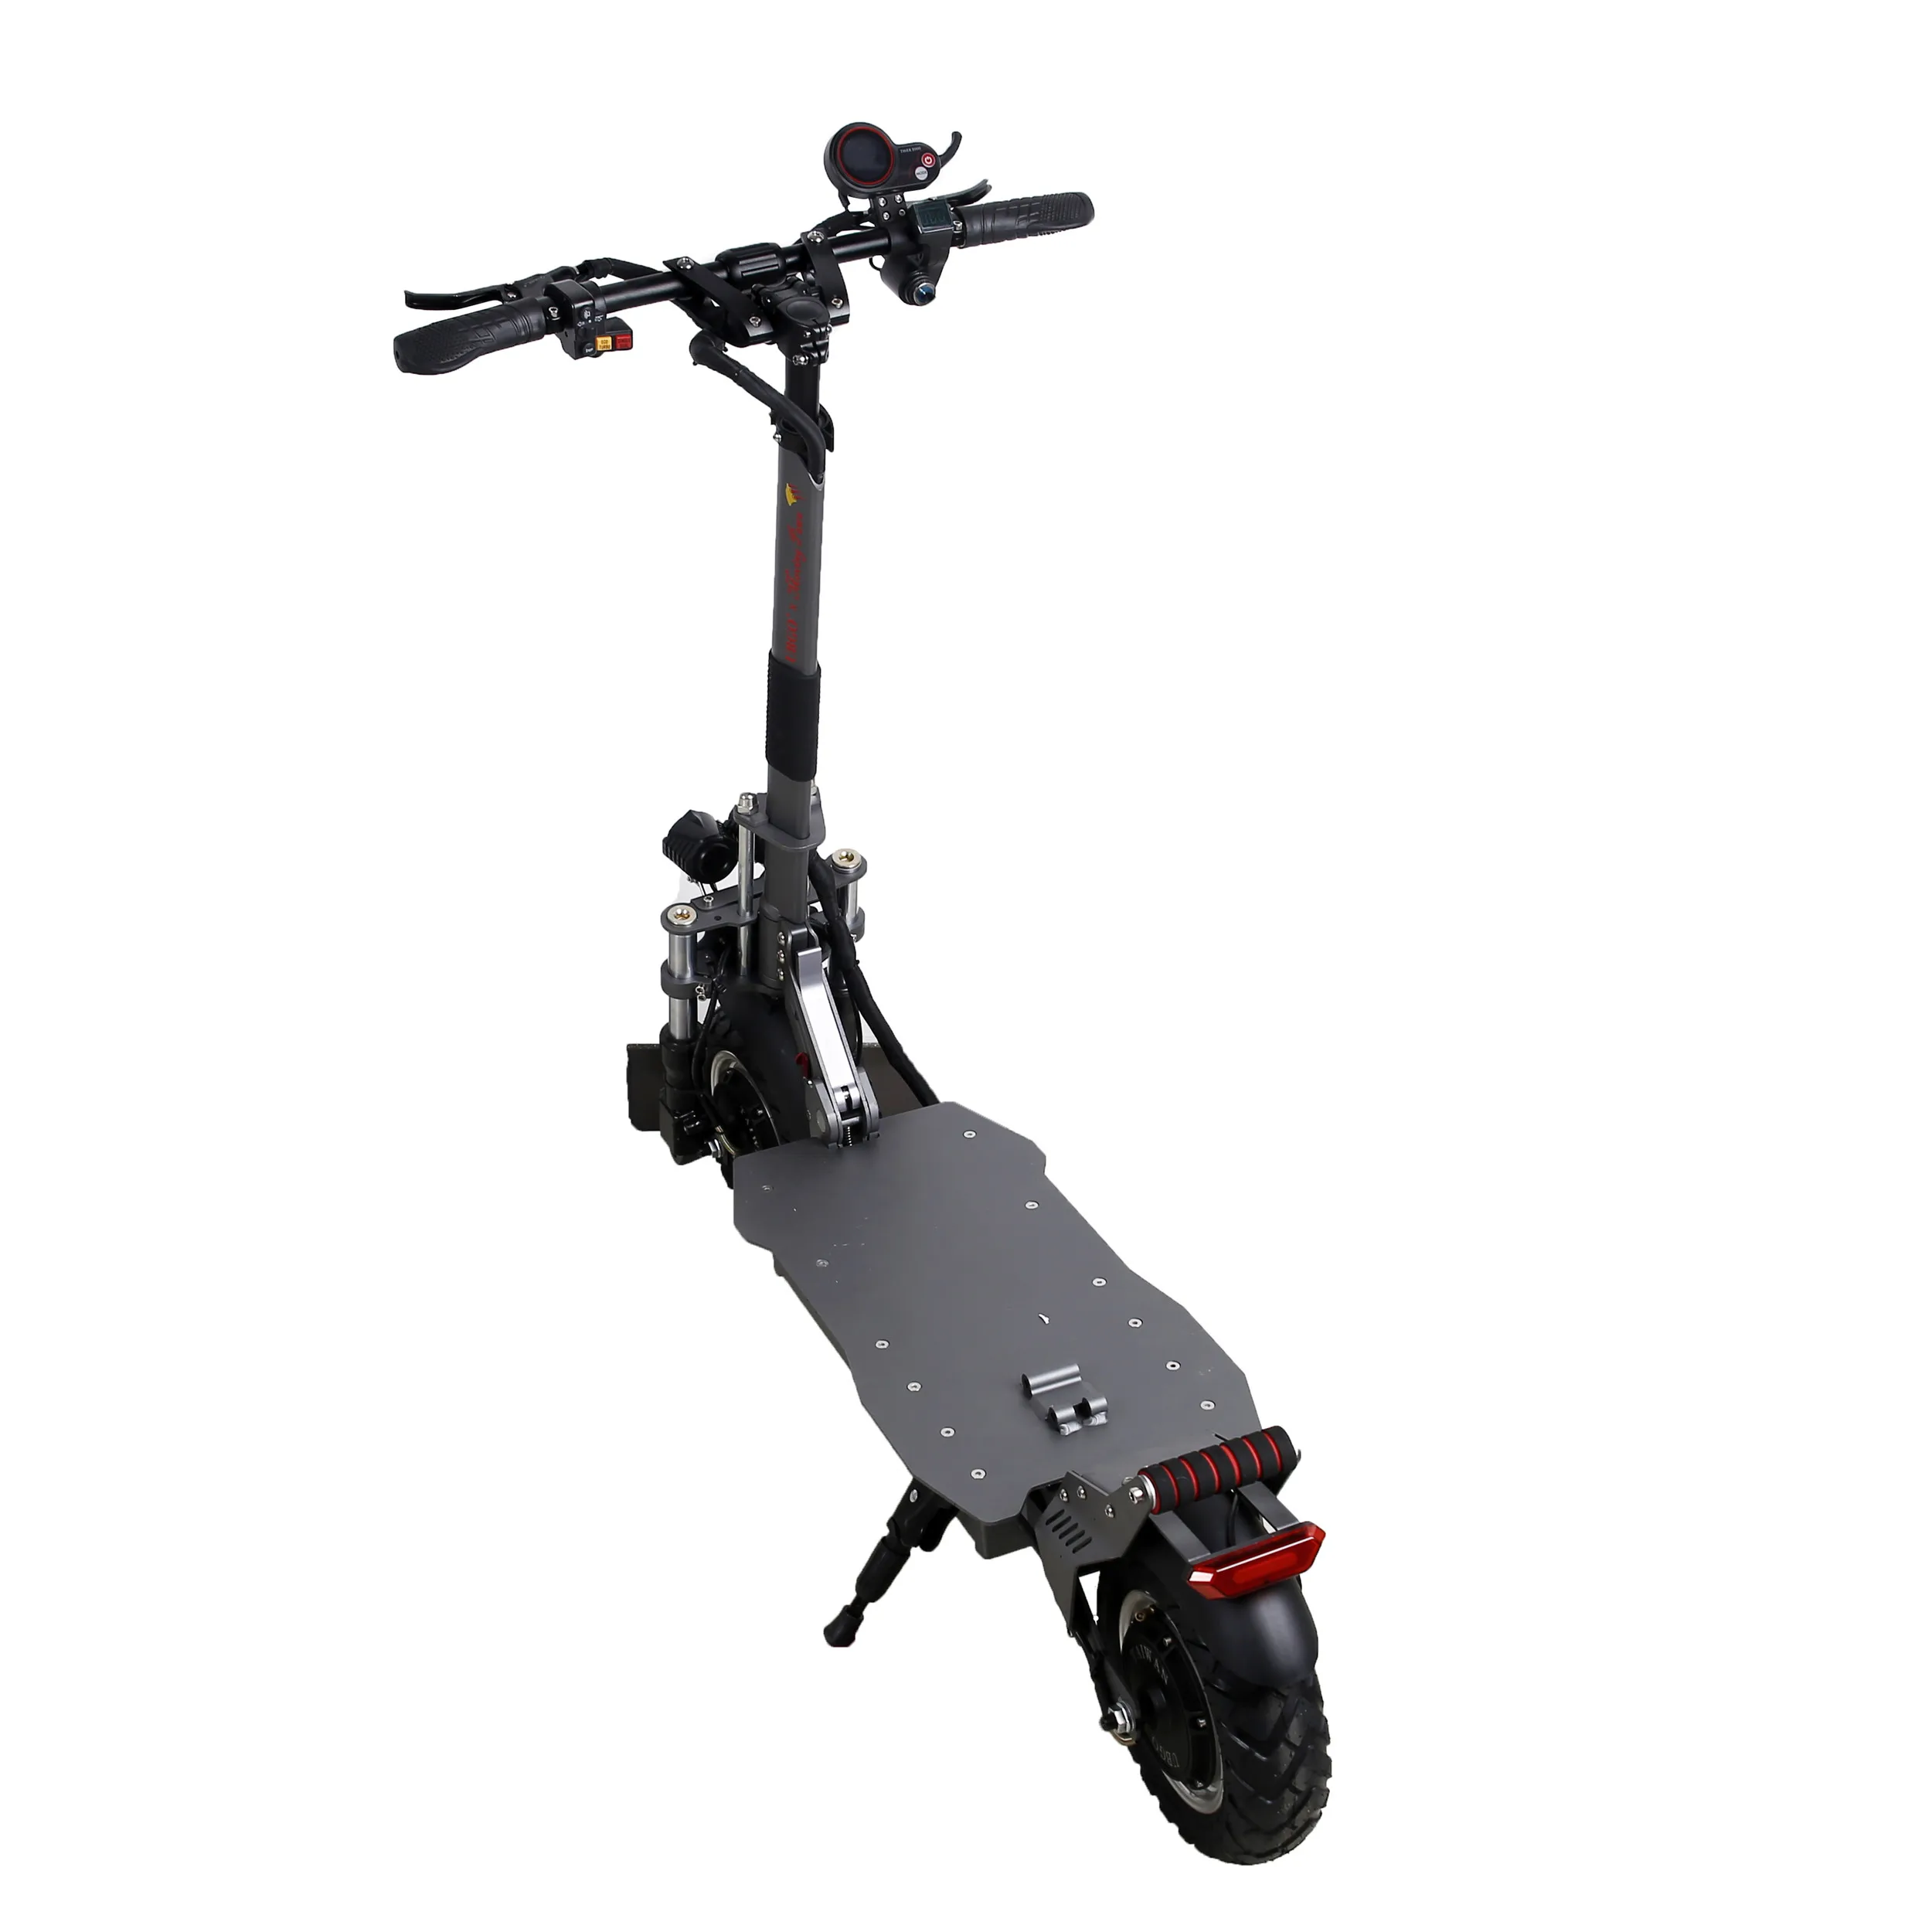 UBGO Moving Paws Plus, скутер, MP-10D03, двойной мотор, мощный электрический скутер, 10 дюймов, вакуумная шина, электронный скутер